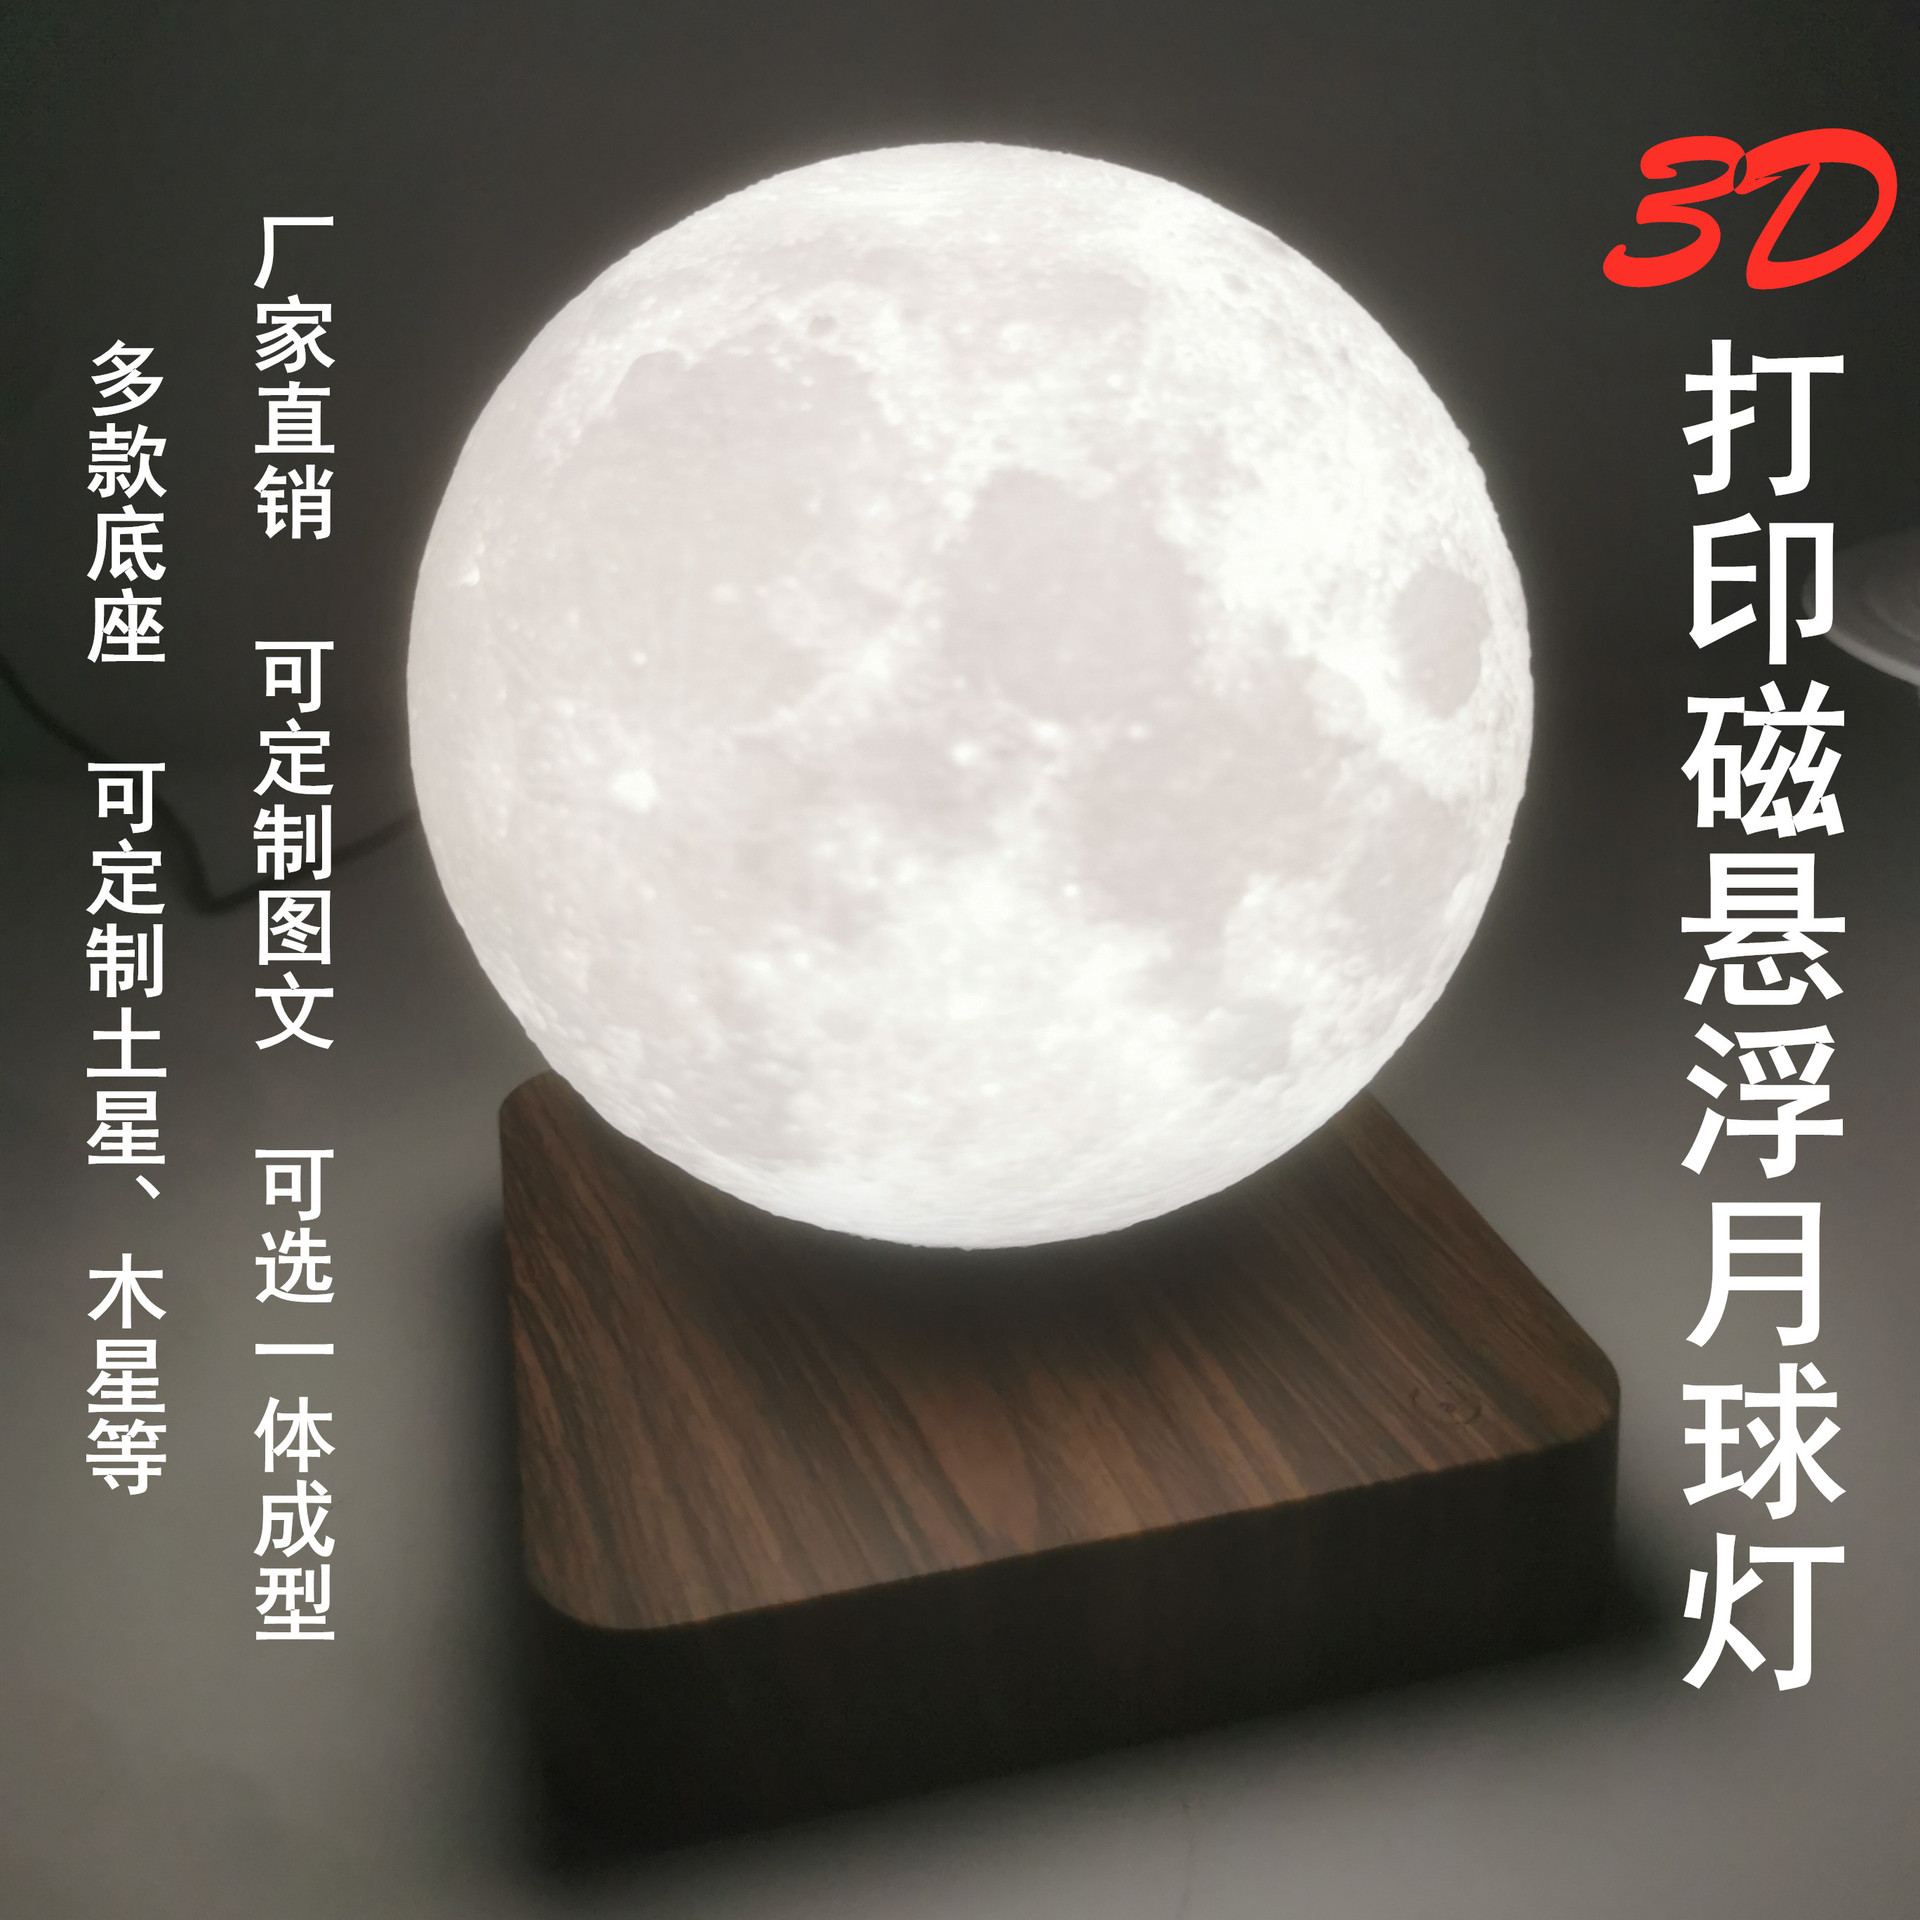 磁悬浮月球灯3D打印黑科技生日礼物星空月亮灯无线旋转床头小夜灯